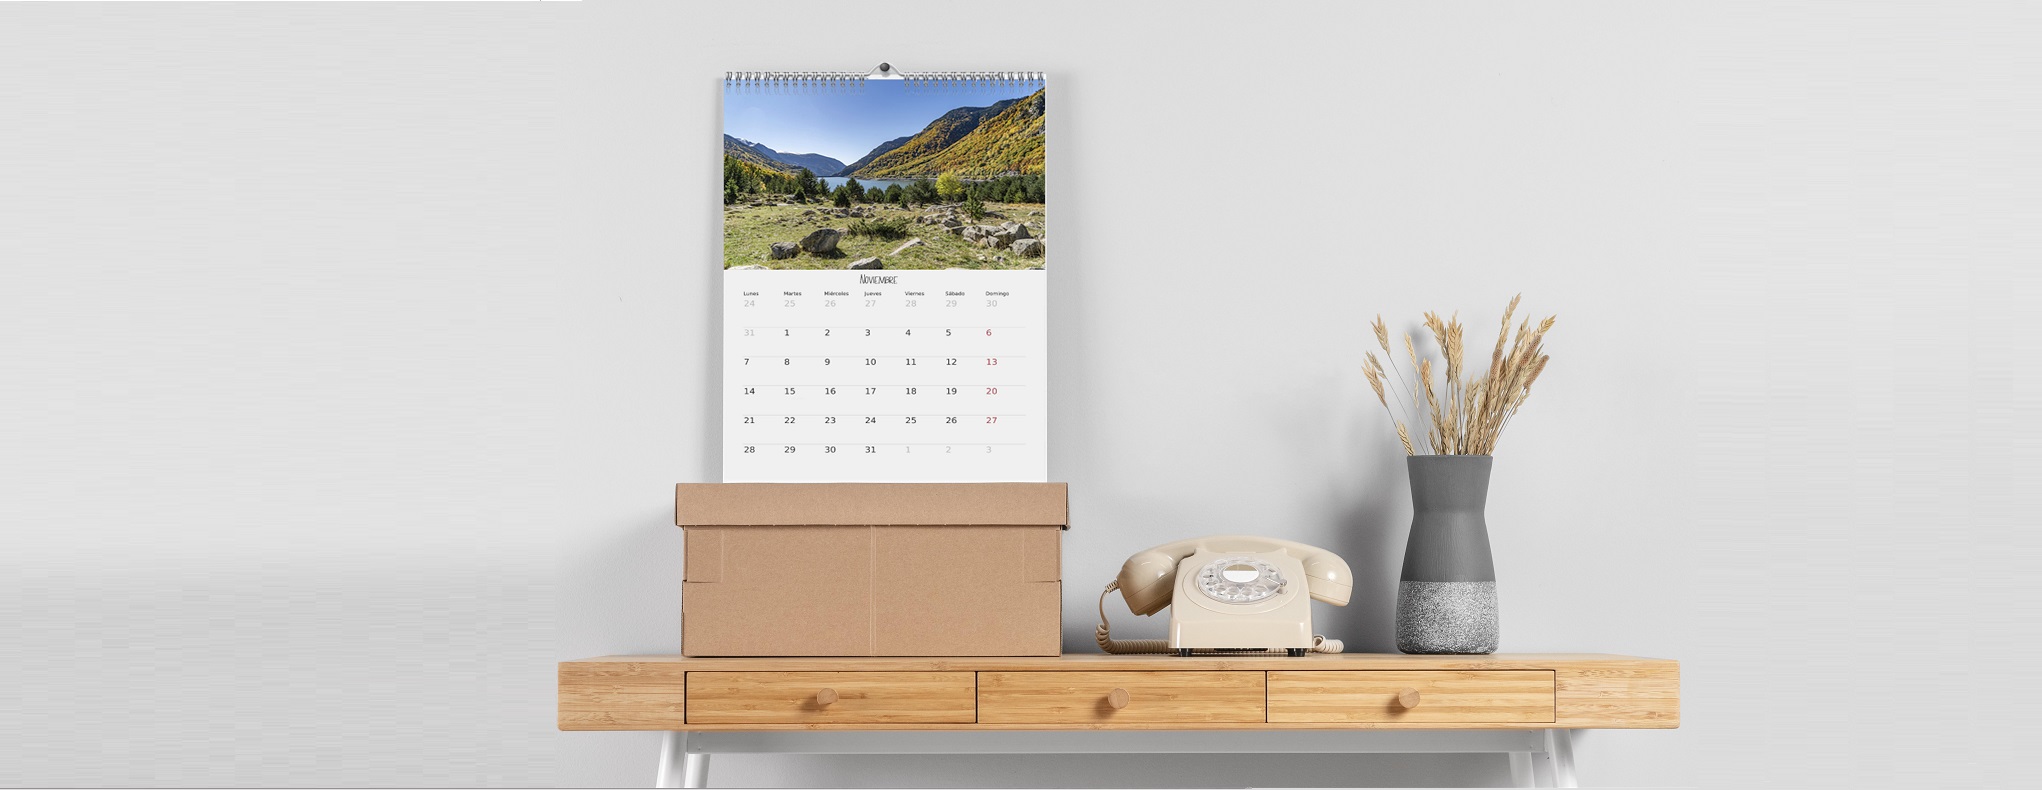 calendarios-personalizados-con-fotos-como-crear-tu-calendario-sonado-review